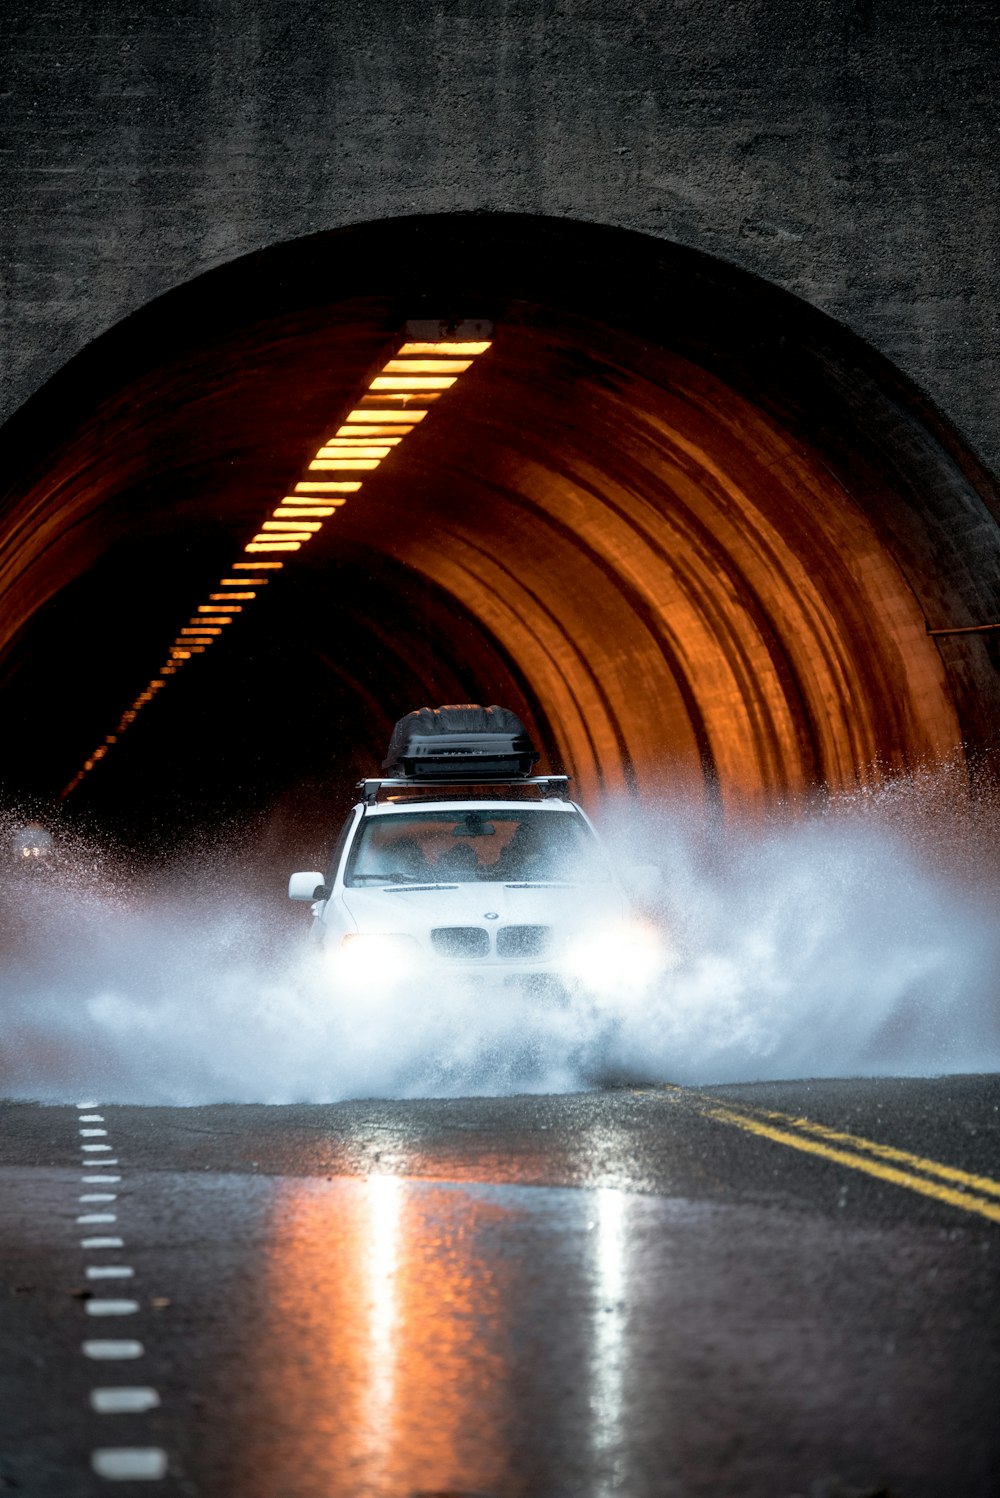 voiture BMW blanche traversant une route goudronnée devant un tunnel en béton